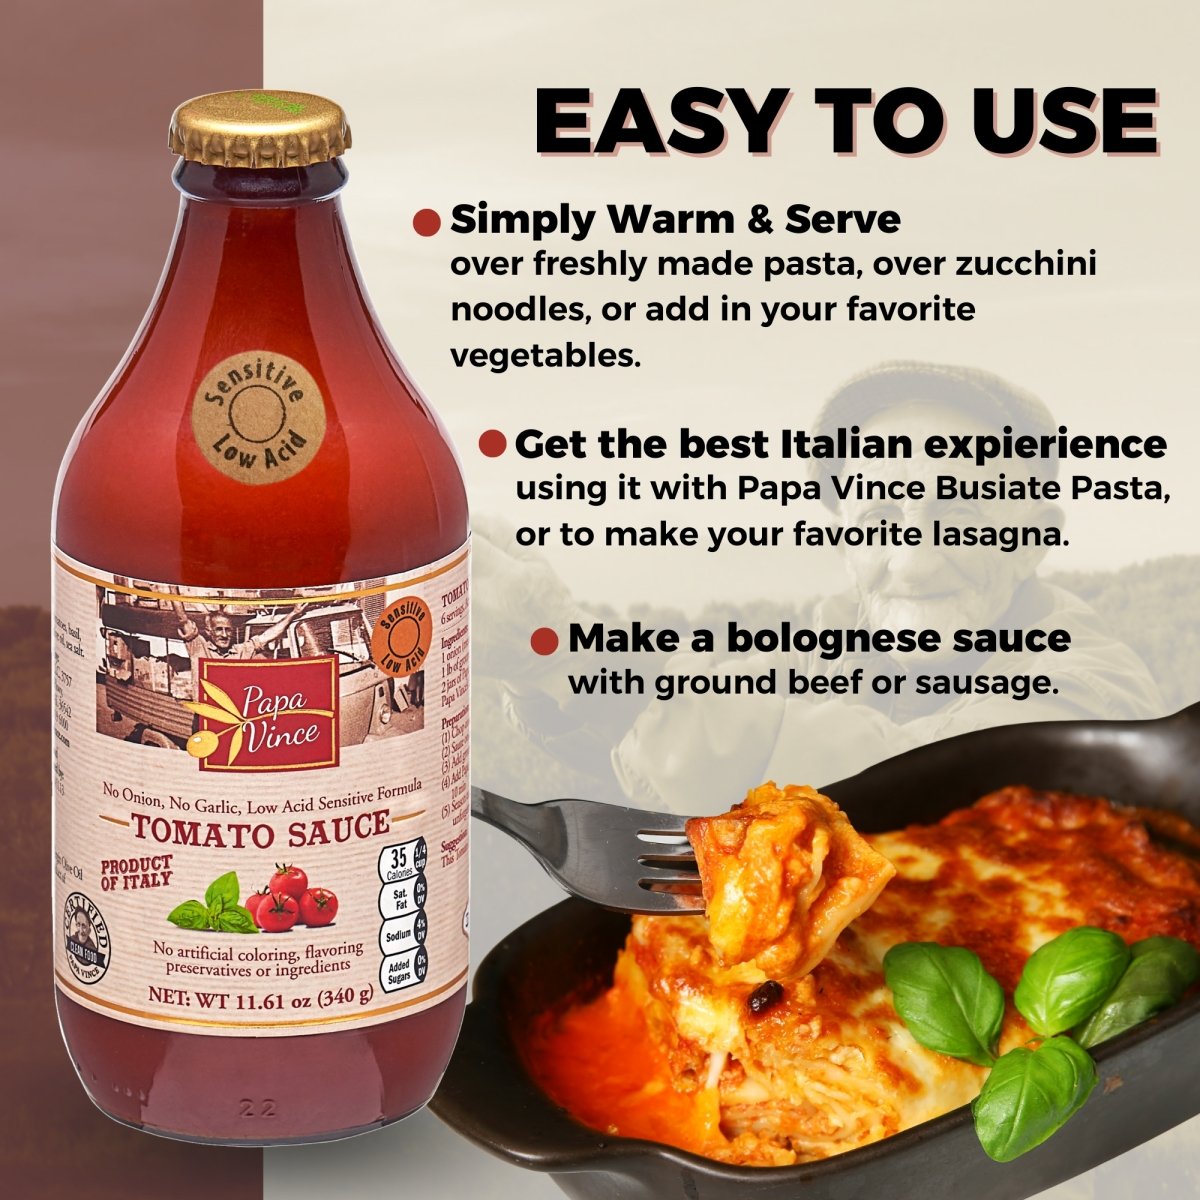 Botticelli Premium Italian Pizza Sauce for Authentic Italian Taste - Low  Carb Low Sugar Keto Pizza Sauce 